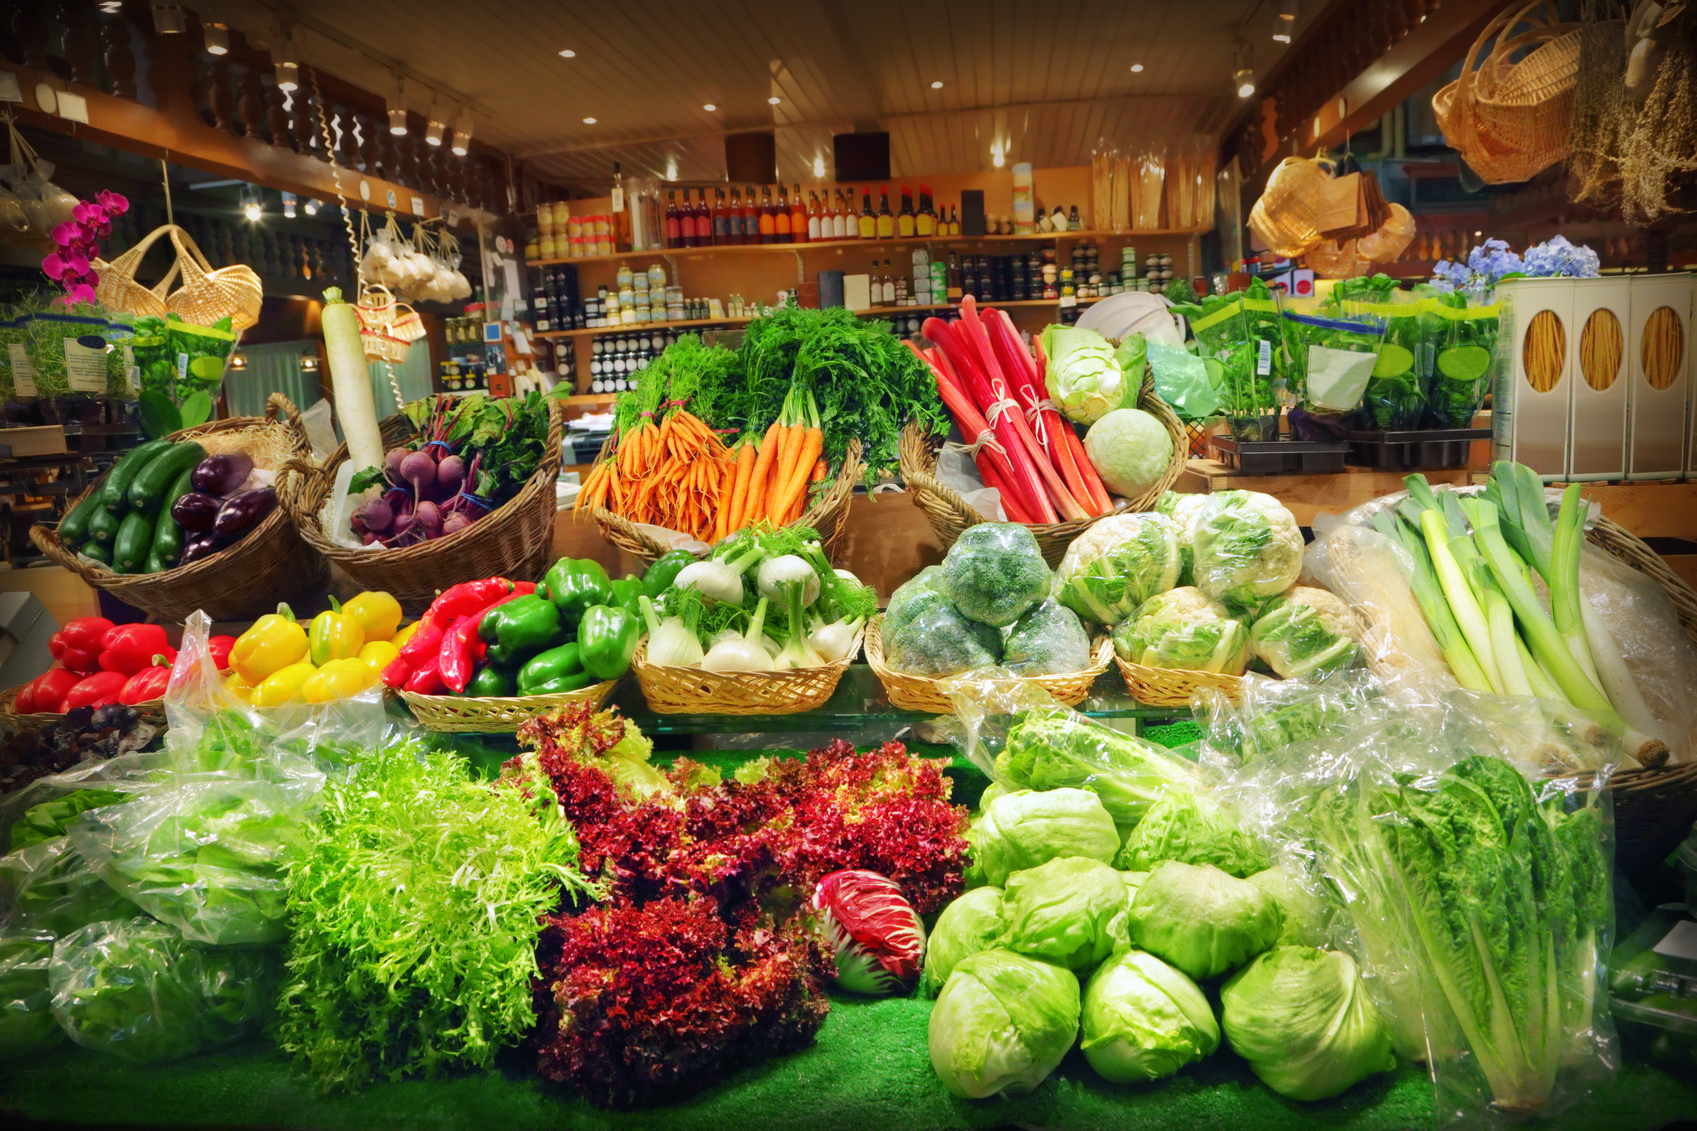 Производителей свежих овощей. Овощи на рынке. Органические продукты. Магазин овощи фрукты. Прилавок с овощами и фруктами.